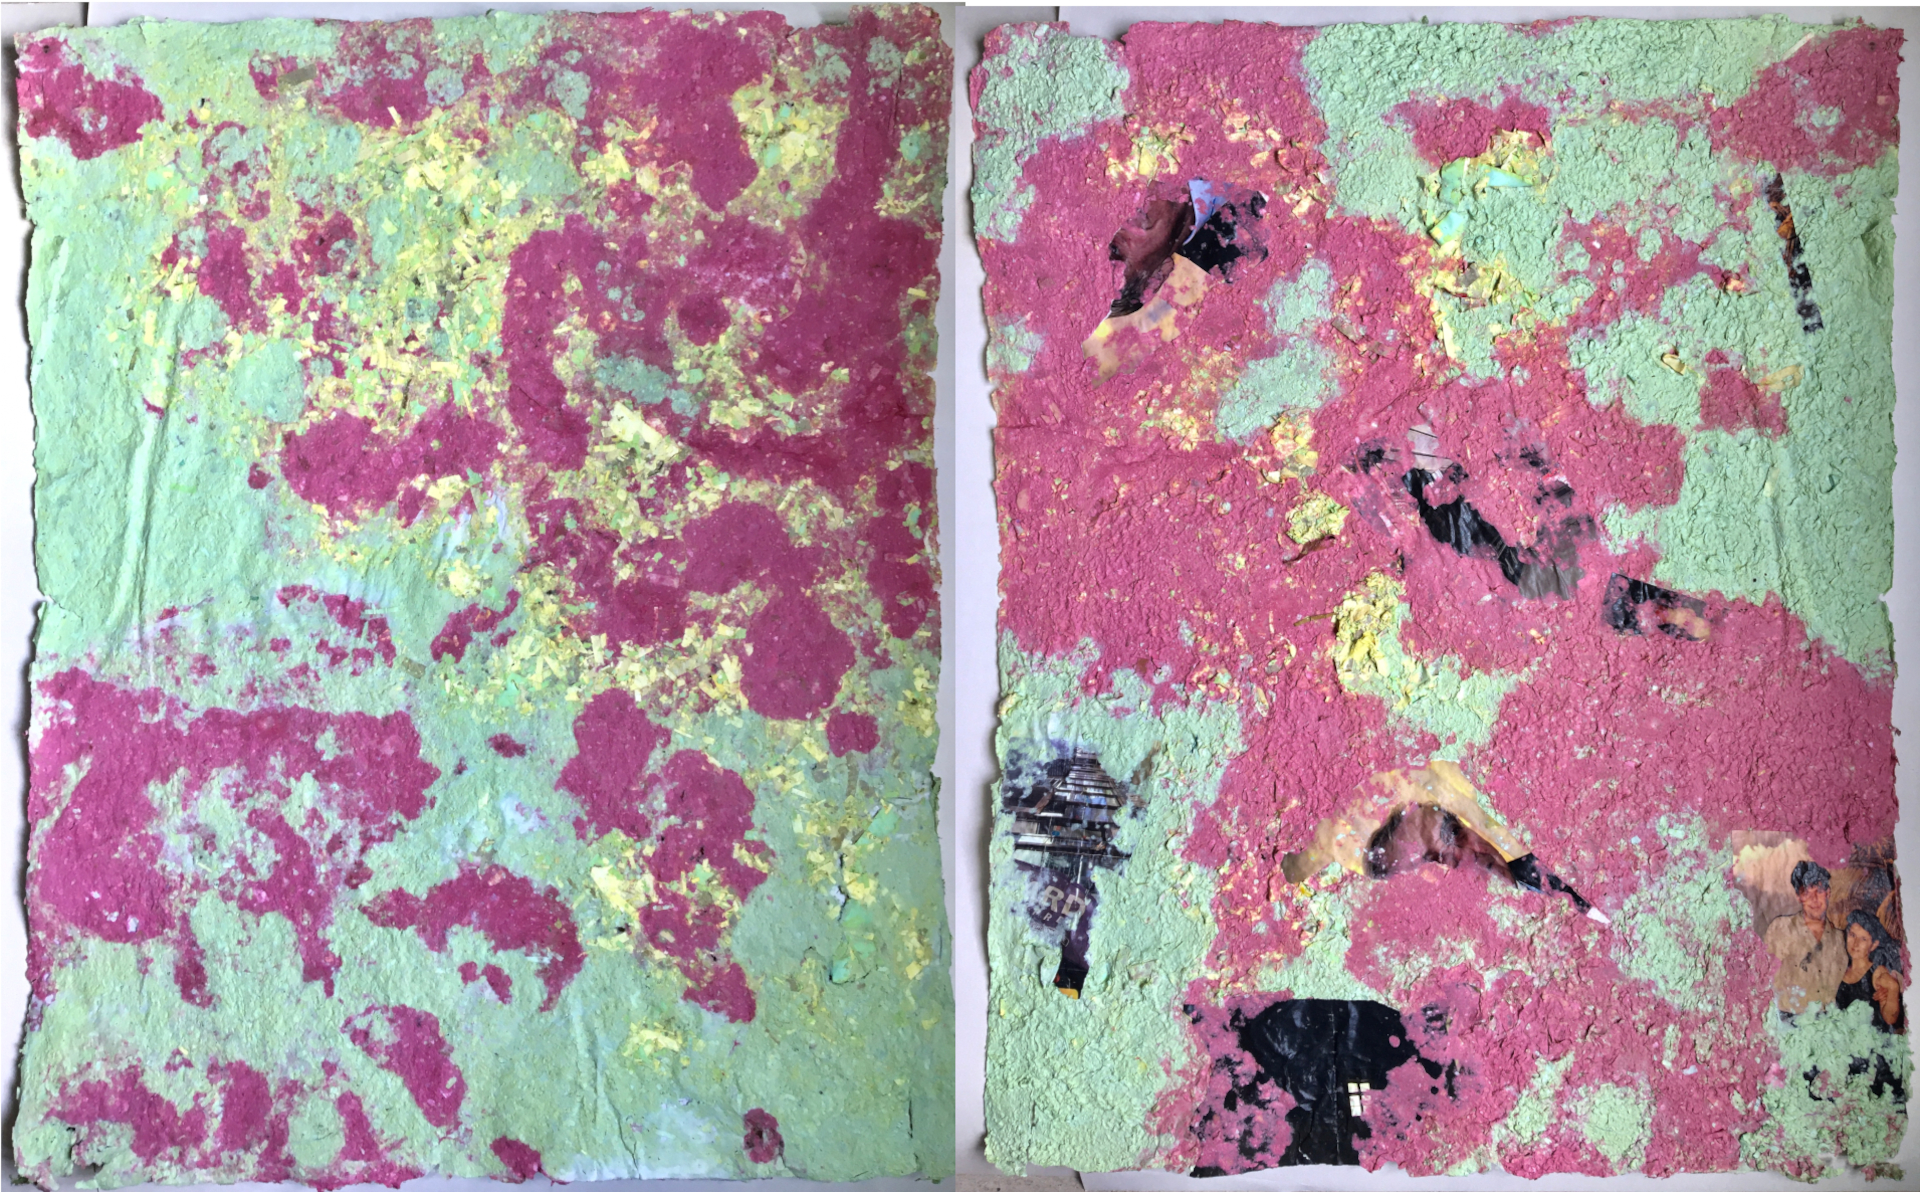 Dwa widoki wielkoformatowych papierów czerpanych w kolorze różu i zieleni przedstawiających abstrakcyjne kształty